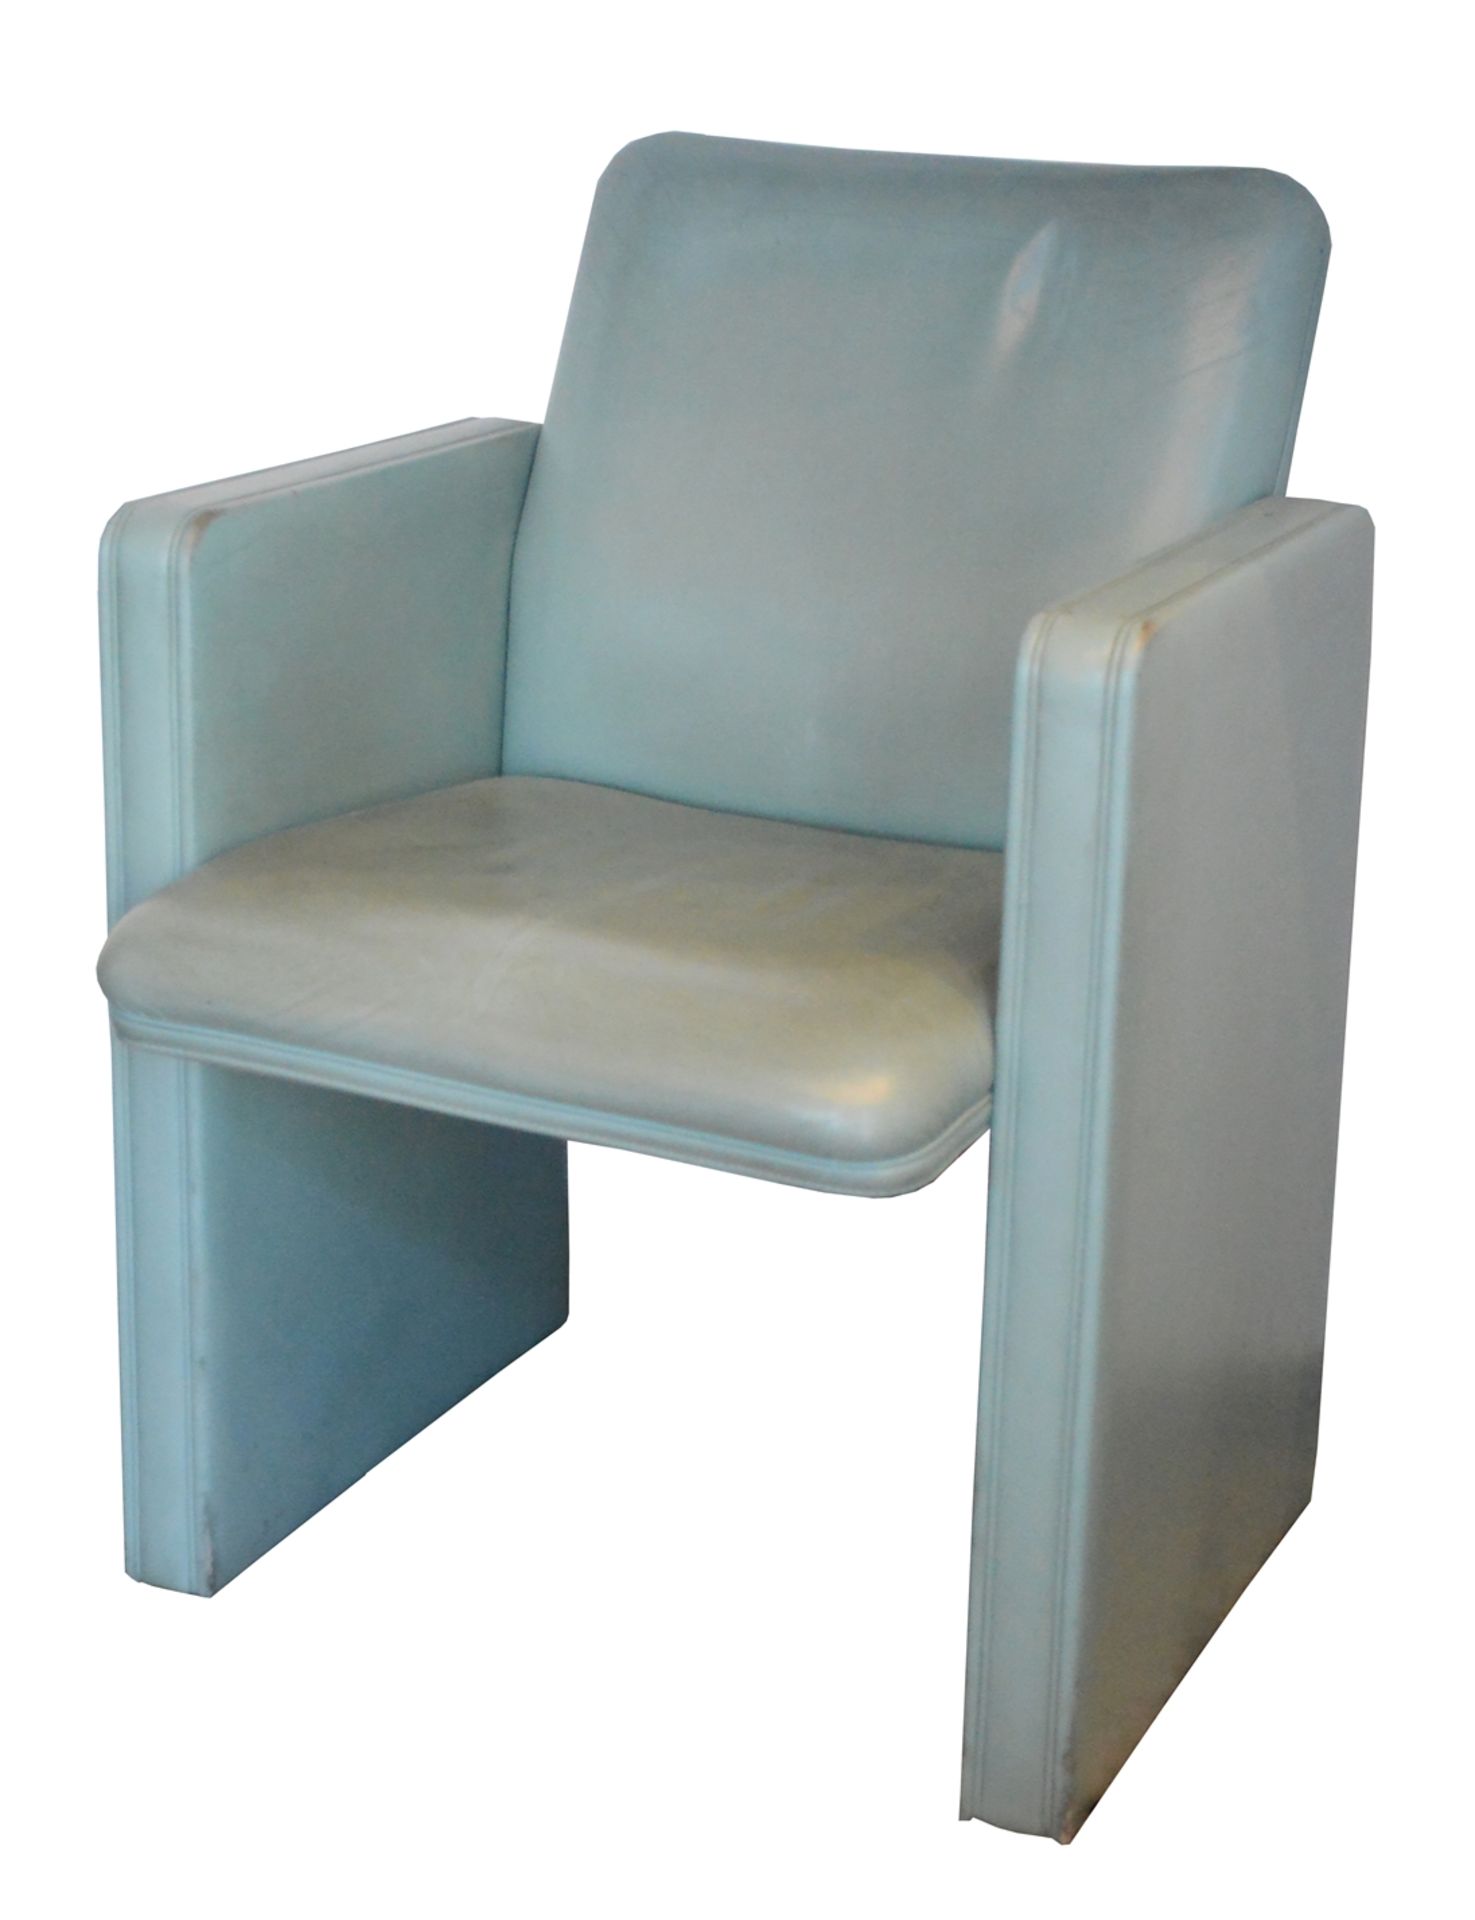 Zwei Sessel, Poltrona Frau, Tito Agnoli, graugrün, 83x60x53cm, Sitzhöhe 47cmTwo armchairs, - Bild 4 aus 4